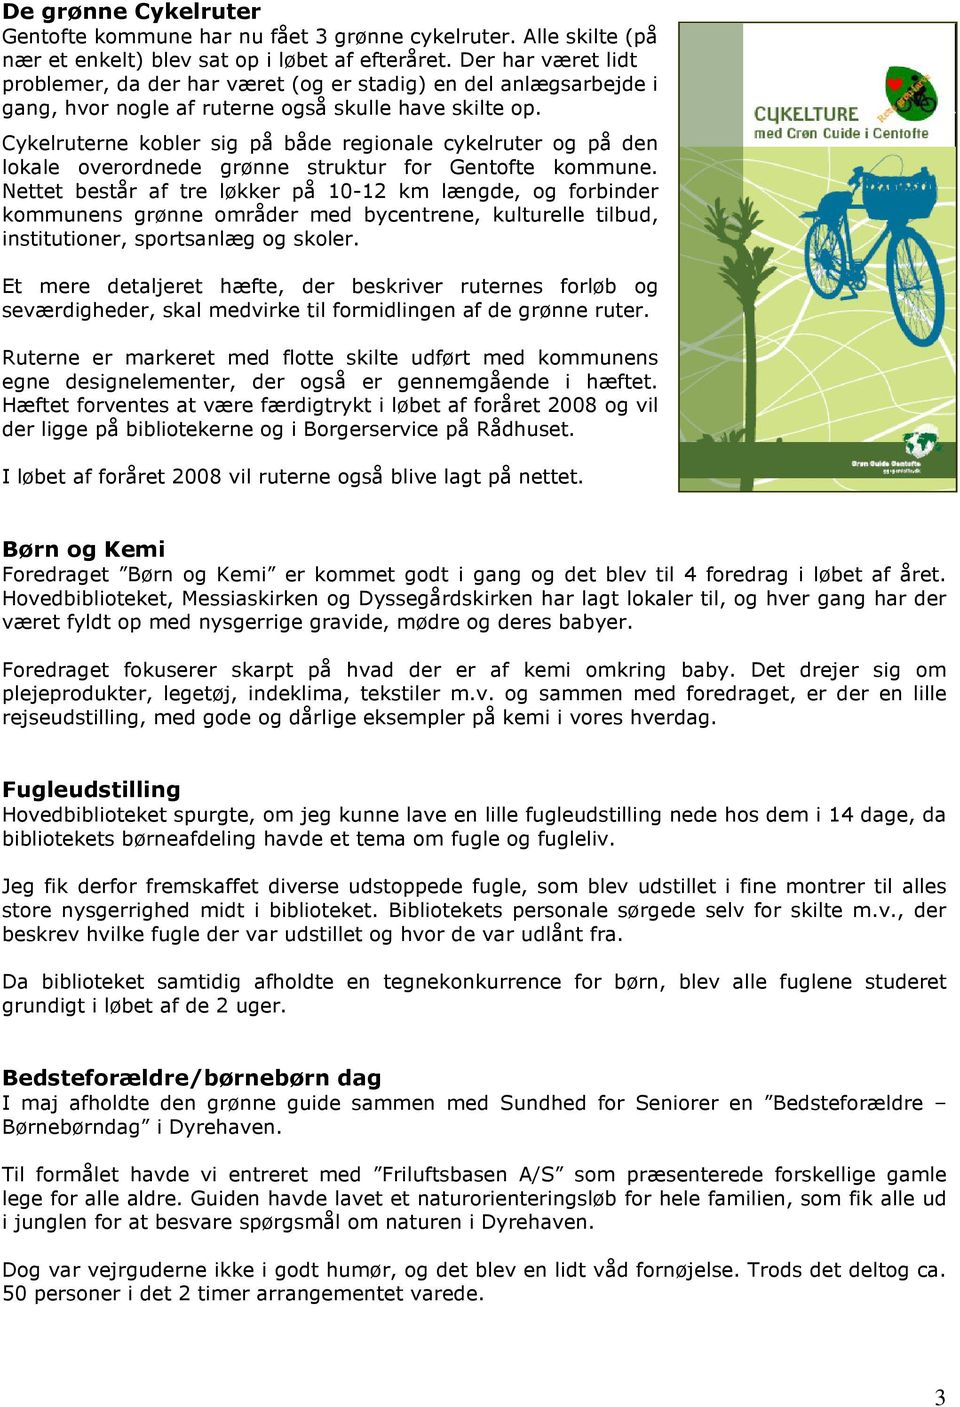 Cykelruterne kobler sig på både regionale cykelruter og på den lokale overordnede grønne struktur for Gentofte kommune.